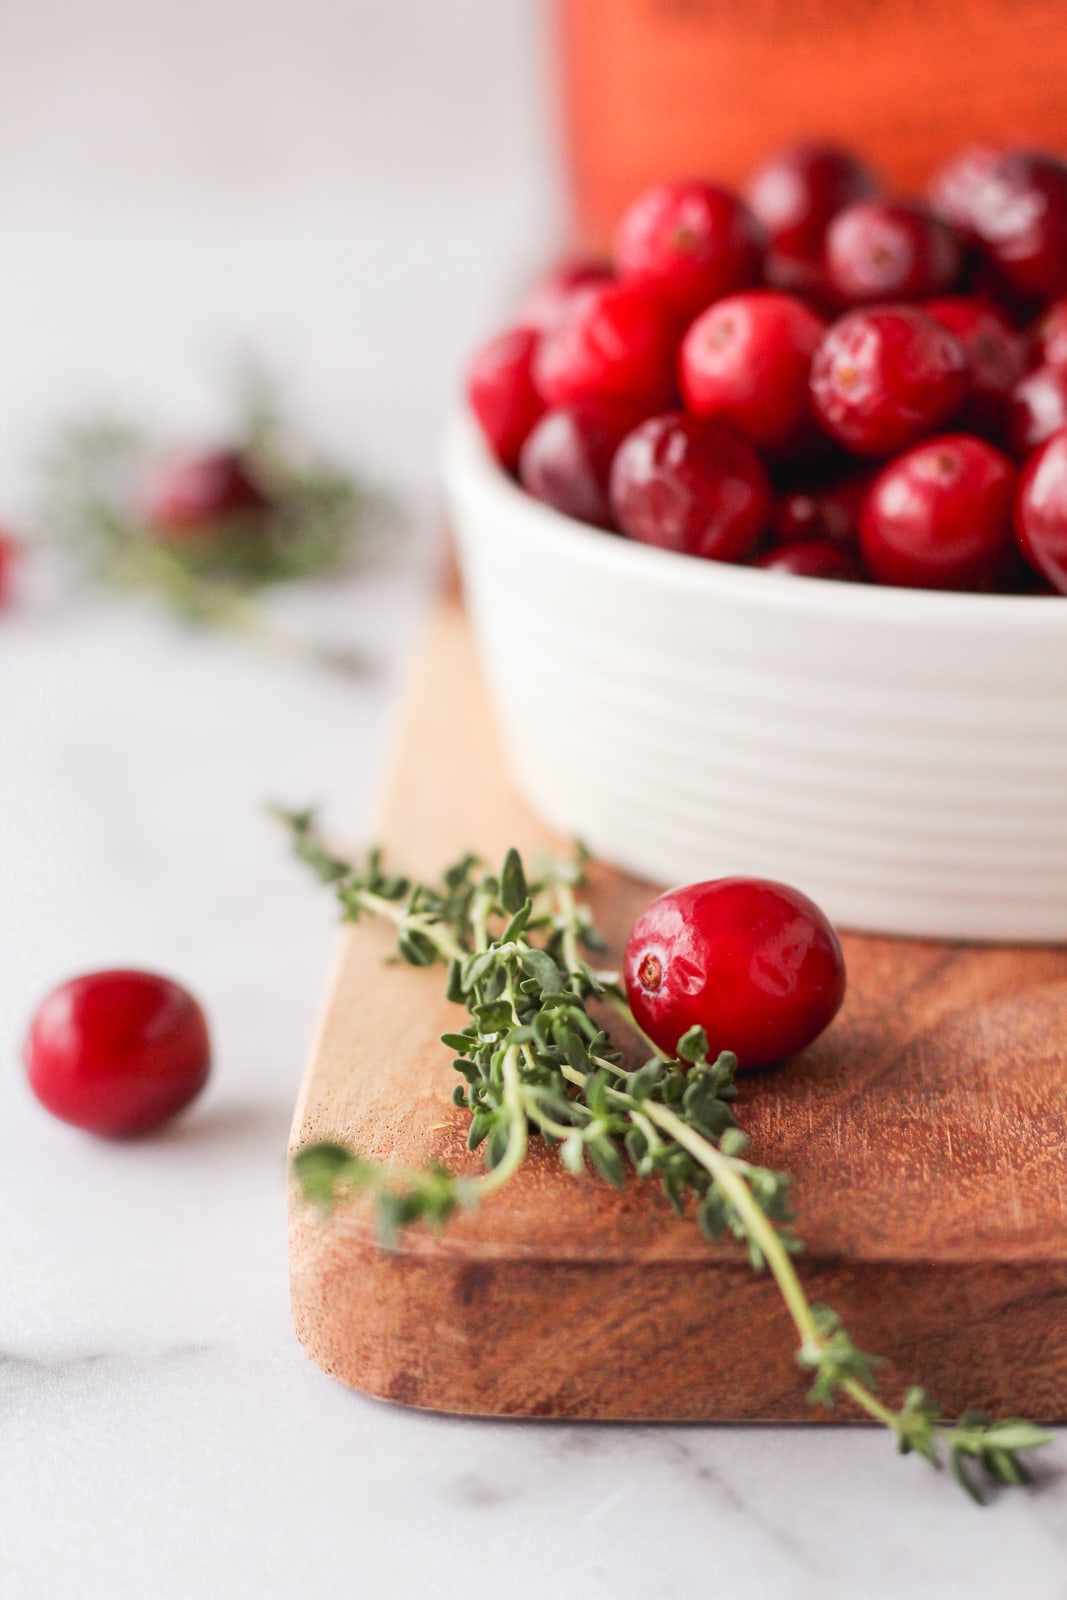 cranberry recipe inspiration